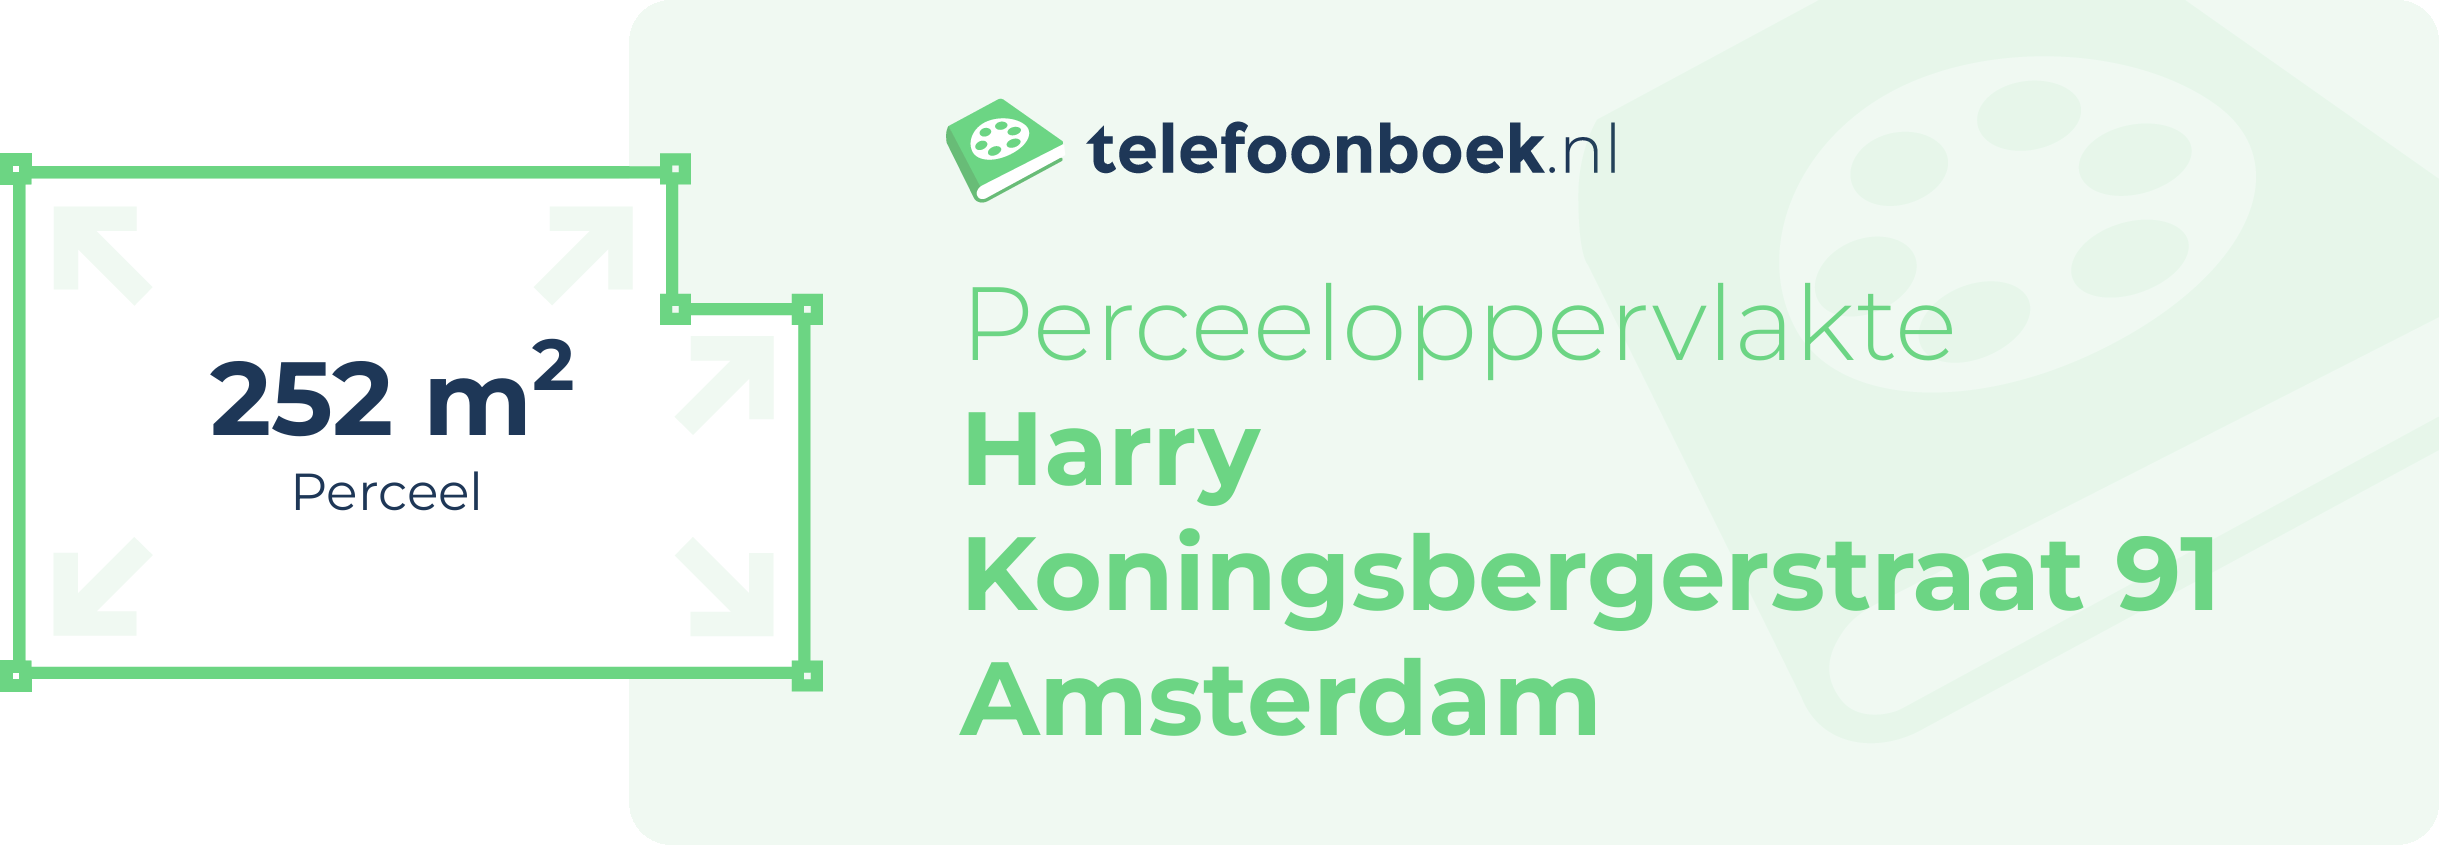 Perceeloppervlakte Harry Koningsbergerstraat 91 Amsterdam